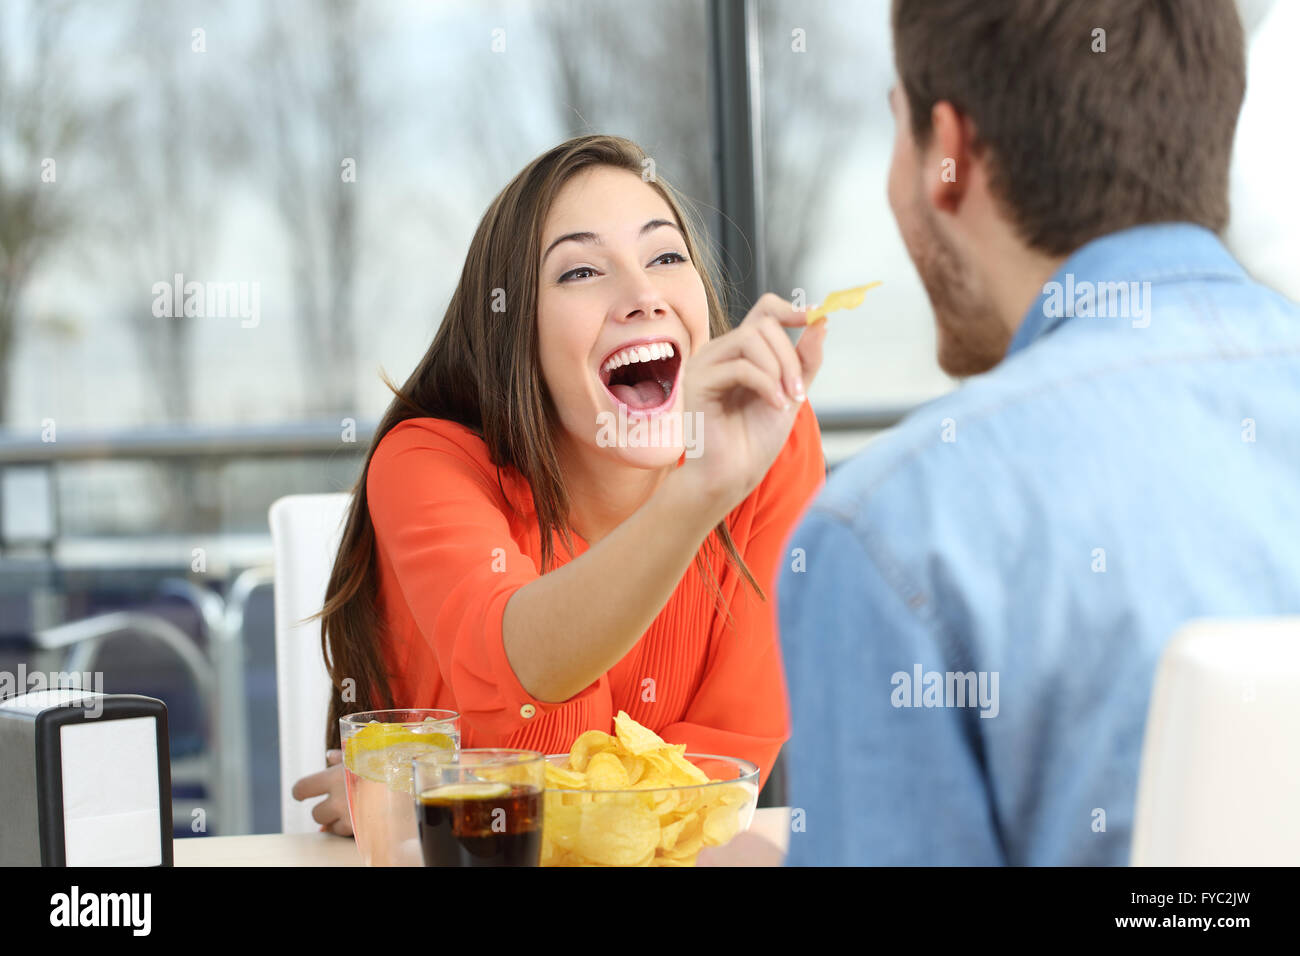 Playful couple puce manger des pommes de terre et de plaisanter à l'autre dans une date dans un café Banque D'Images